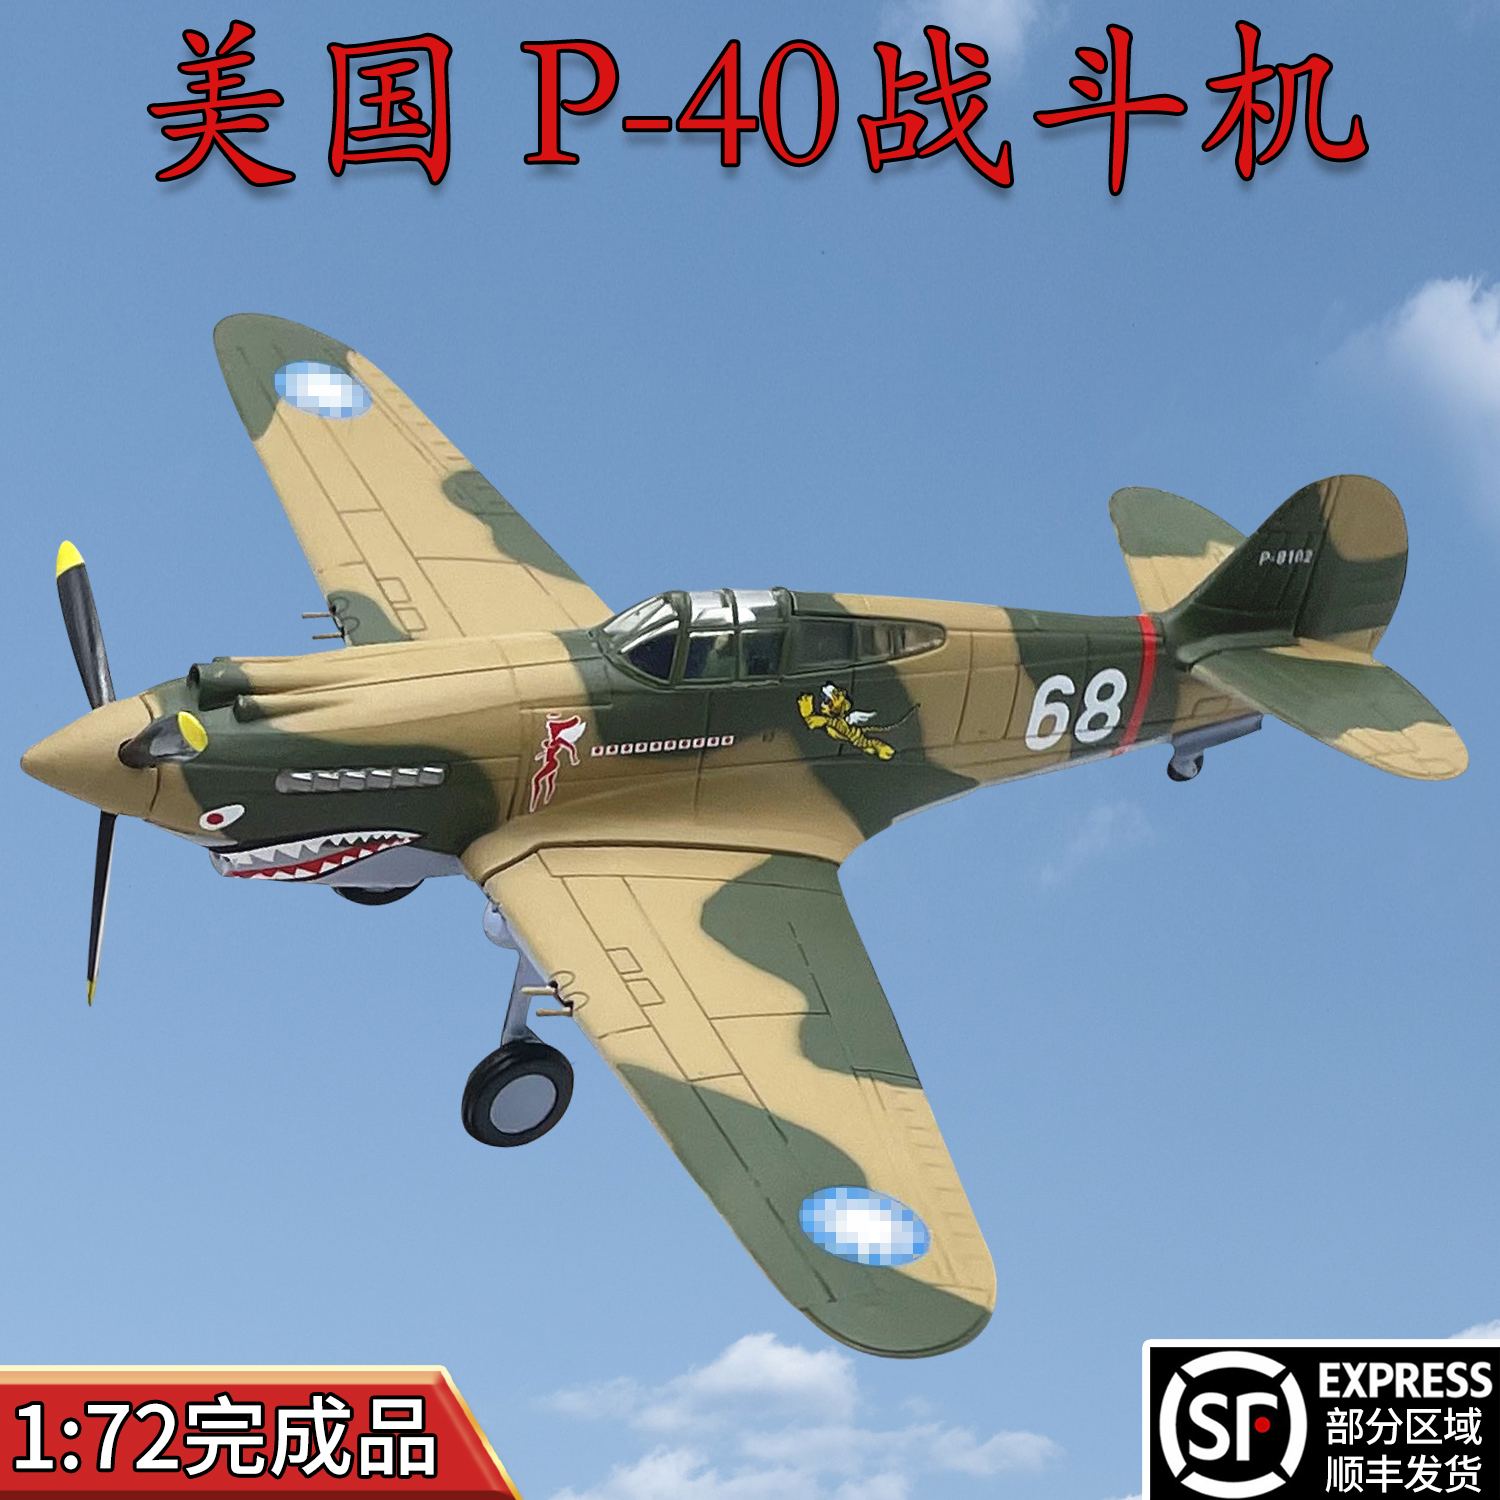 1:72̱ P-40-